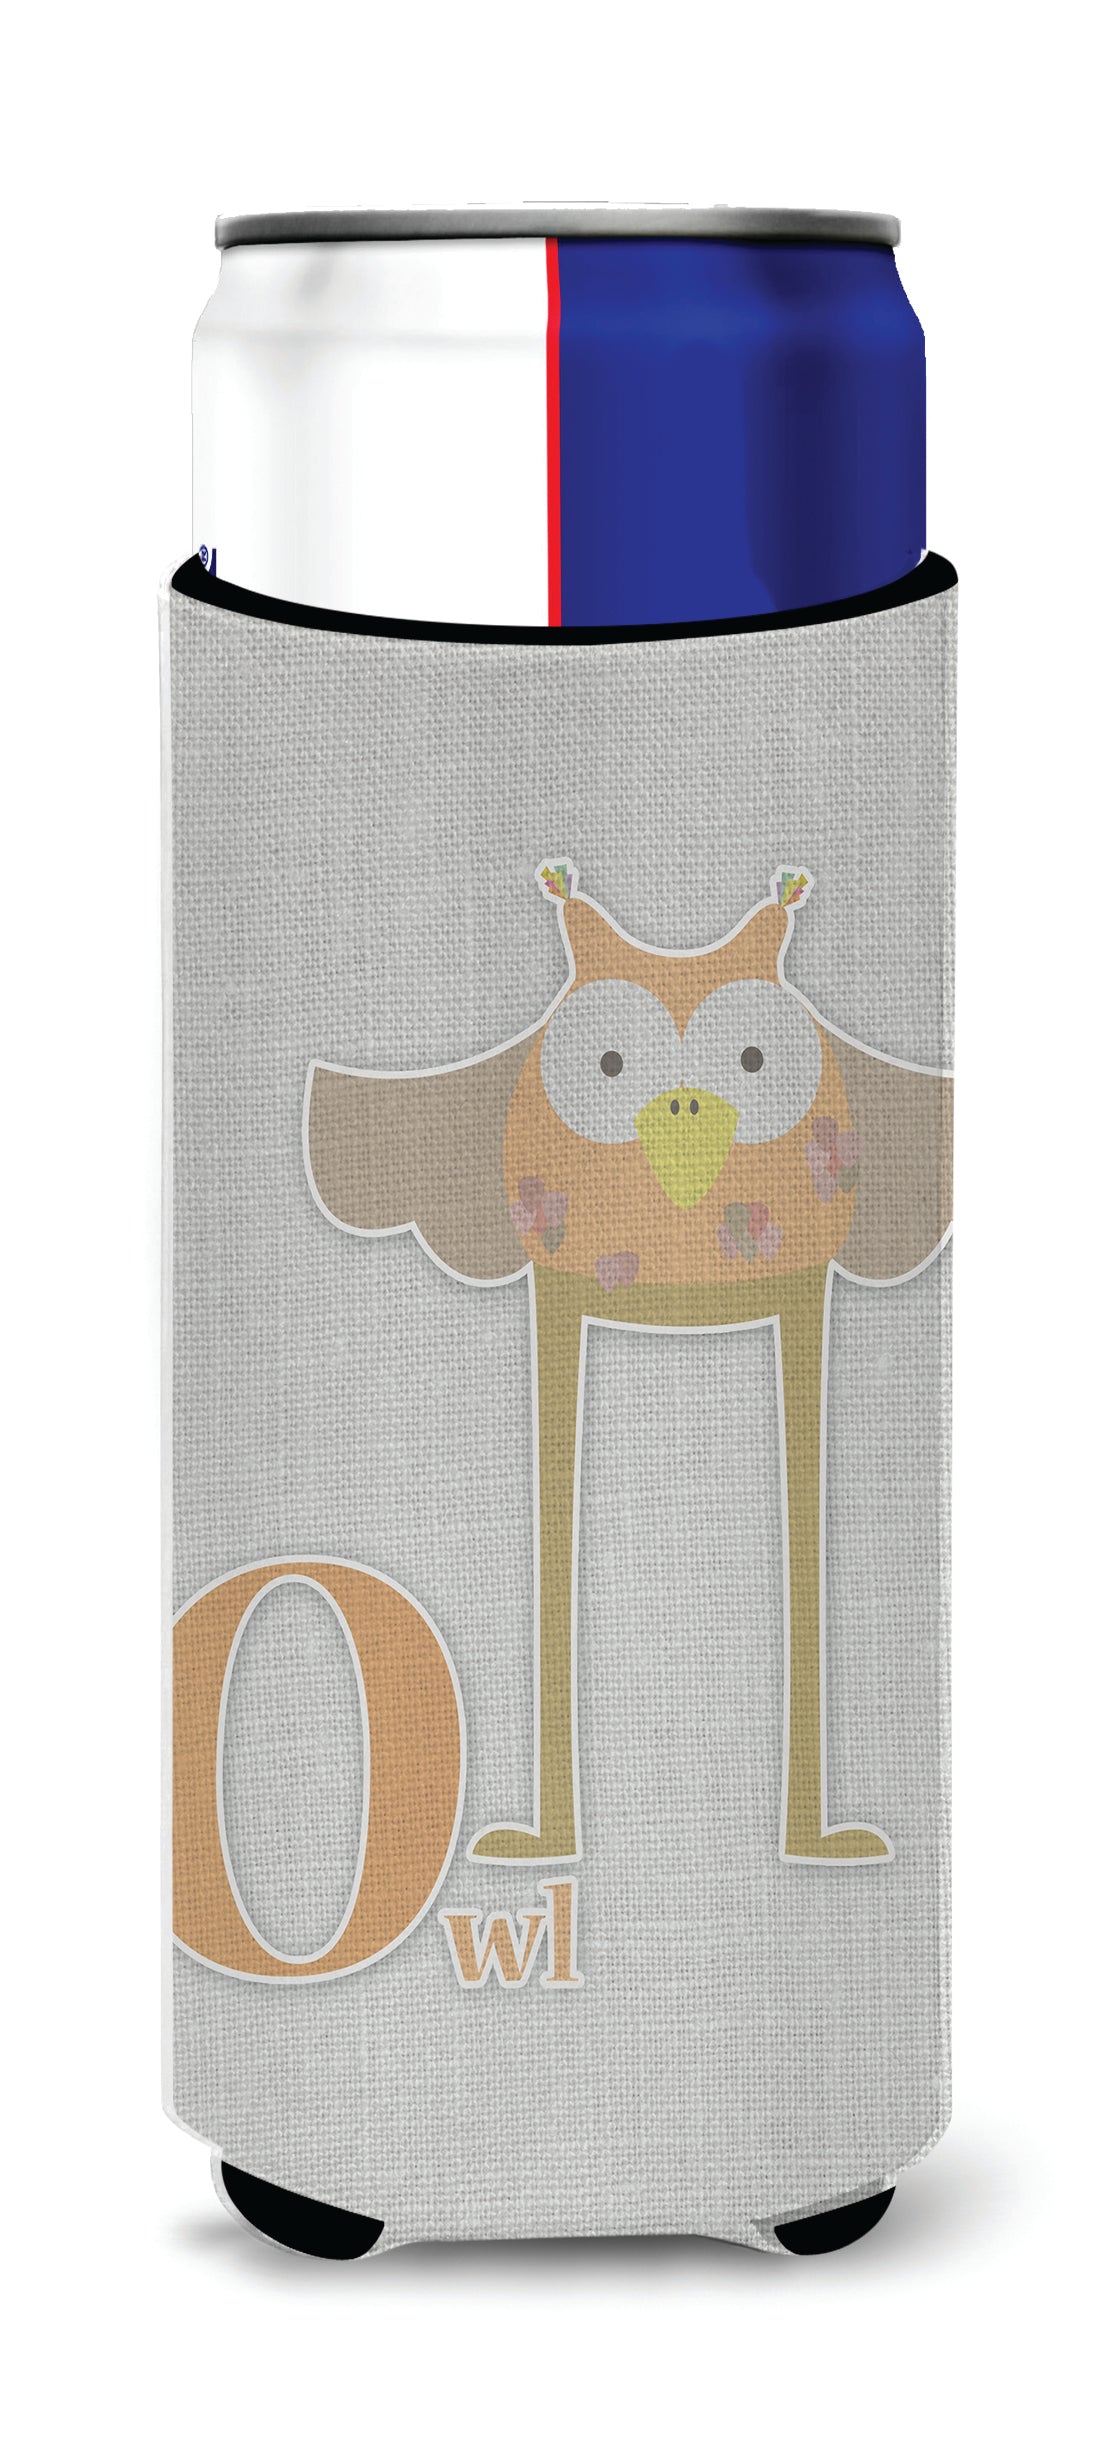 Alphabet O for Owl  Ultra Hugger for slim cans BB5740MUK  the-store.com.